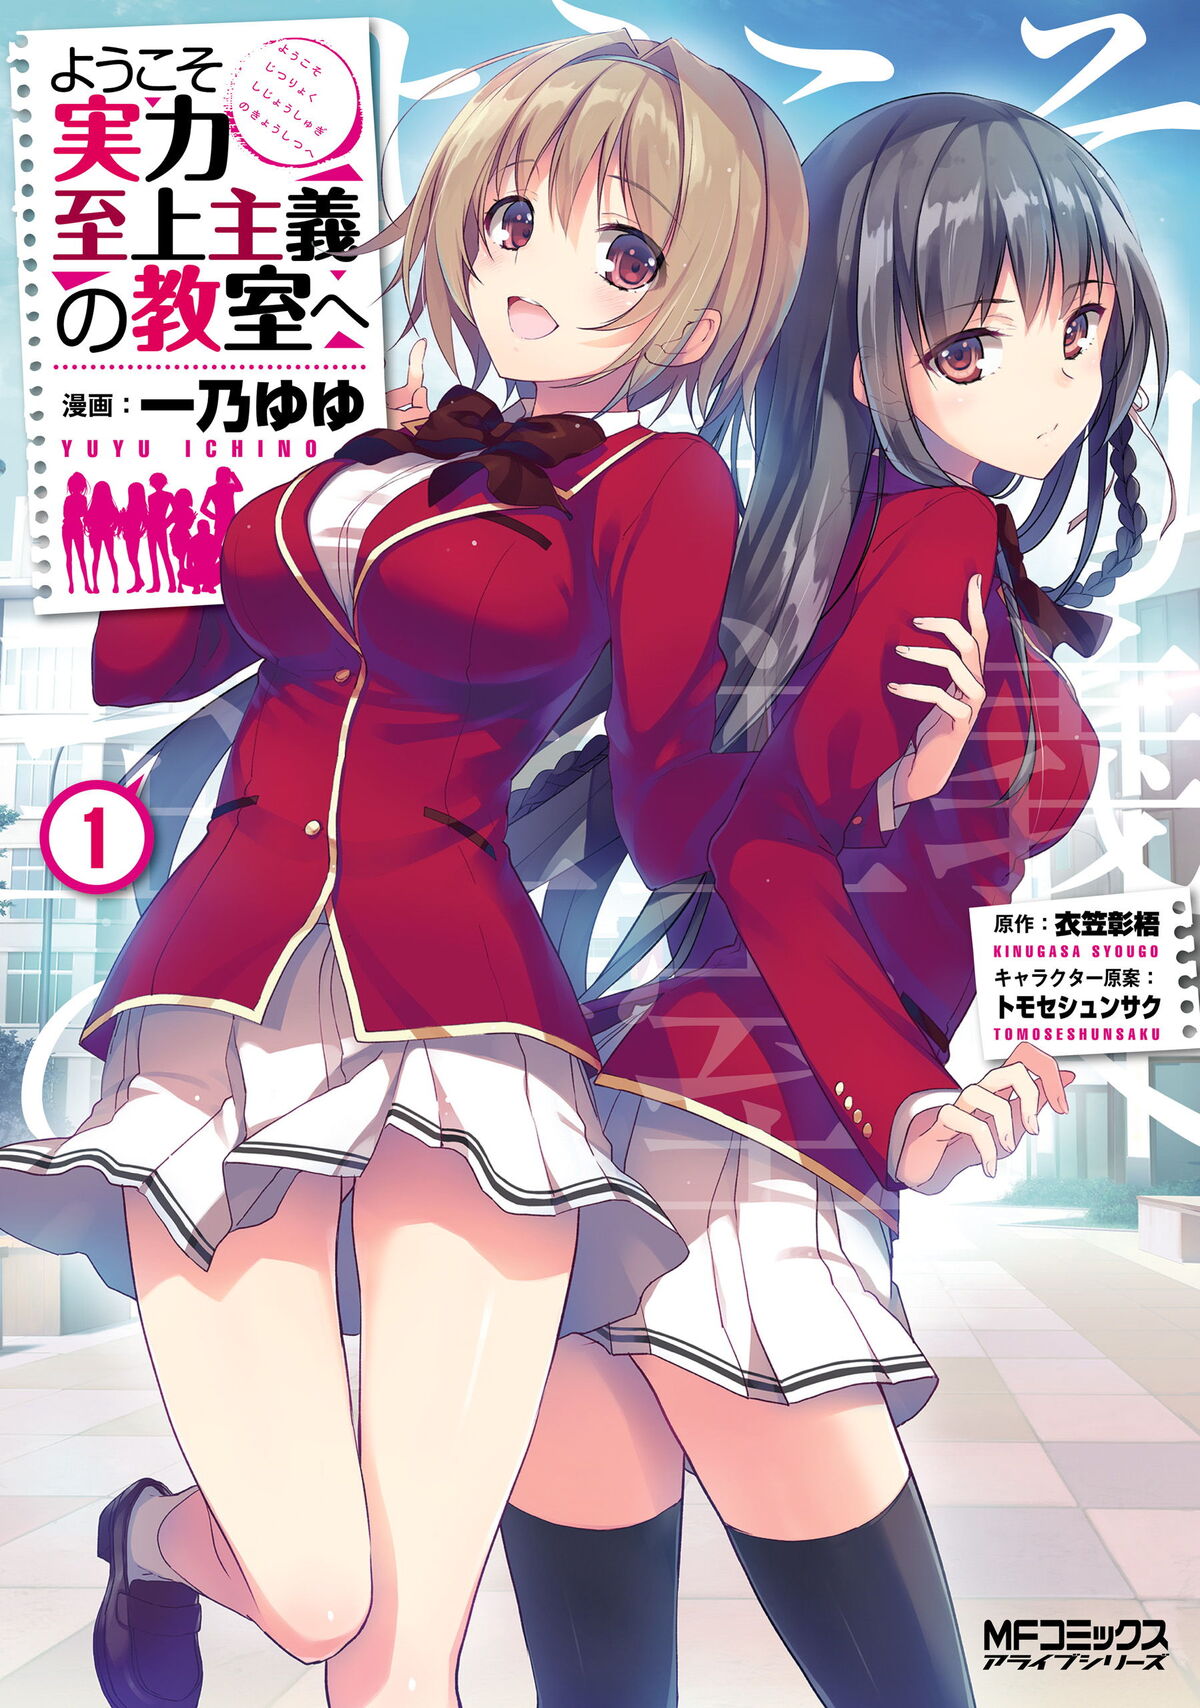 Manga Volumen 1 2do Año, You-Zitsu Wiki ES